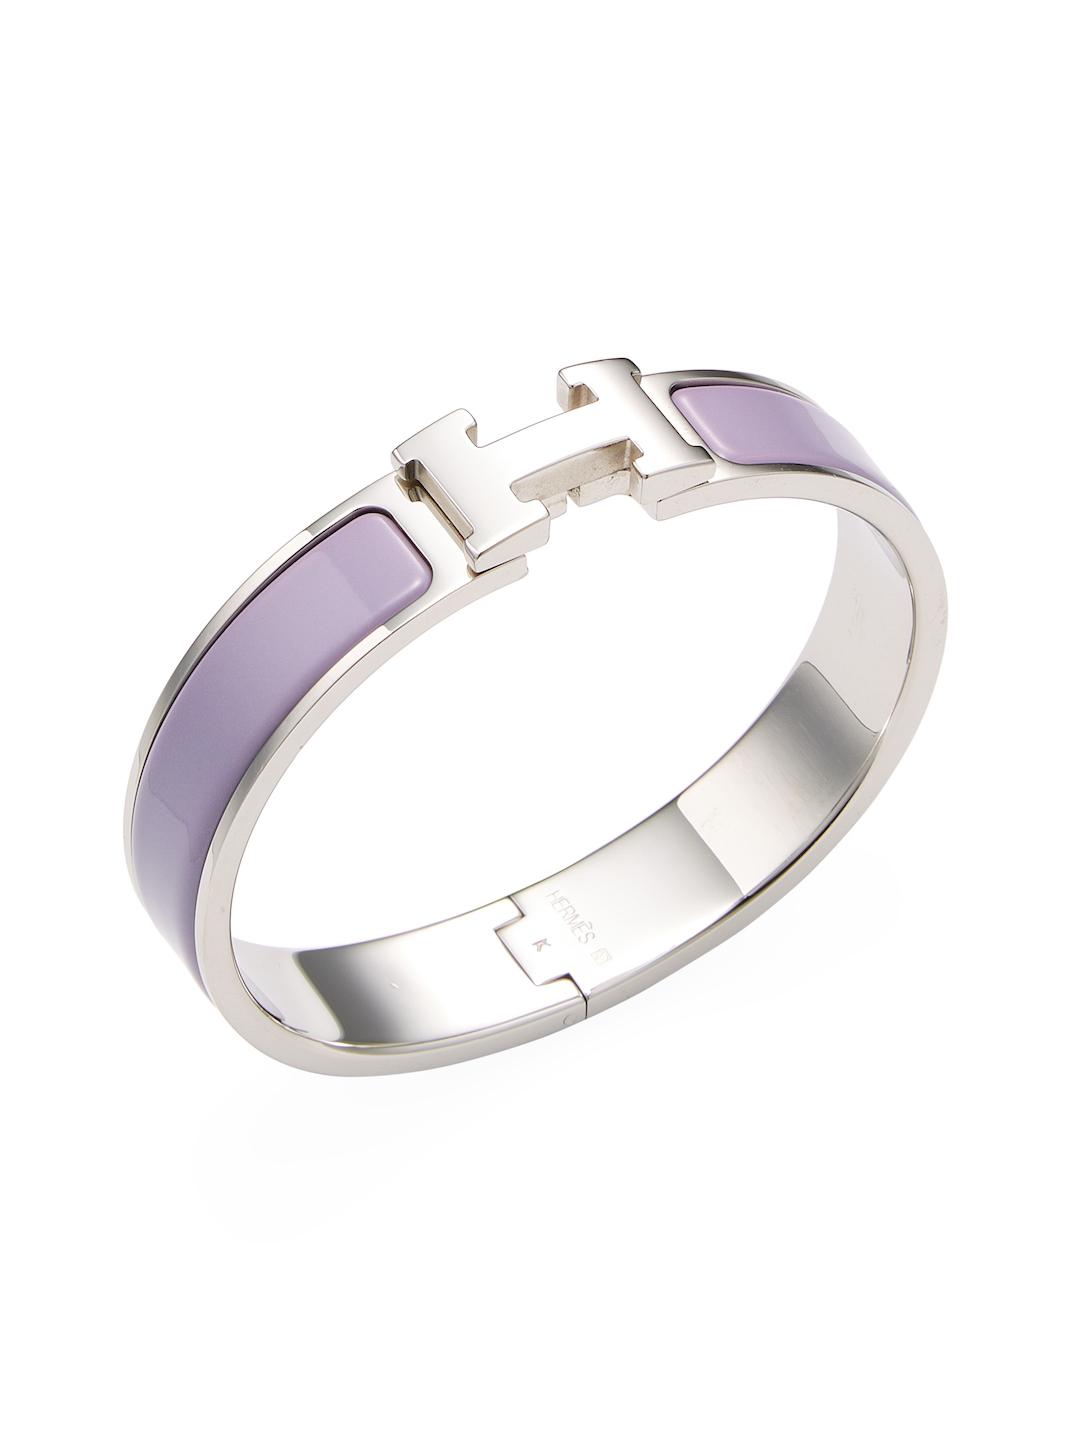 Clic H GM Narrow, Used & Preloved Hermes Bracelet, LXR USA, Purple